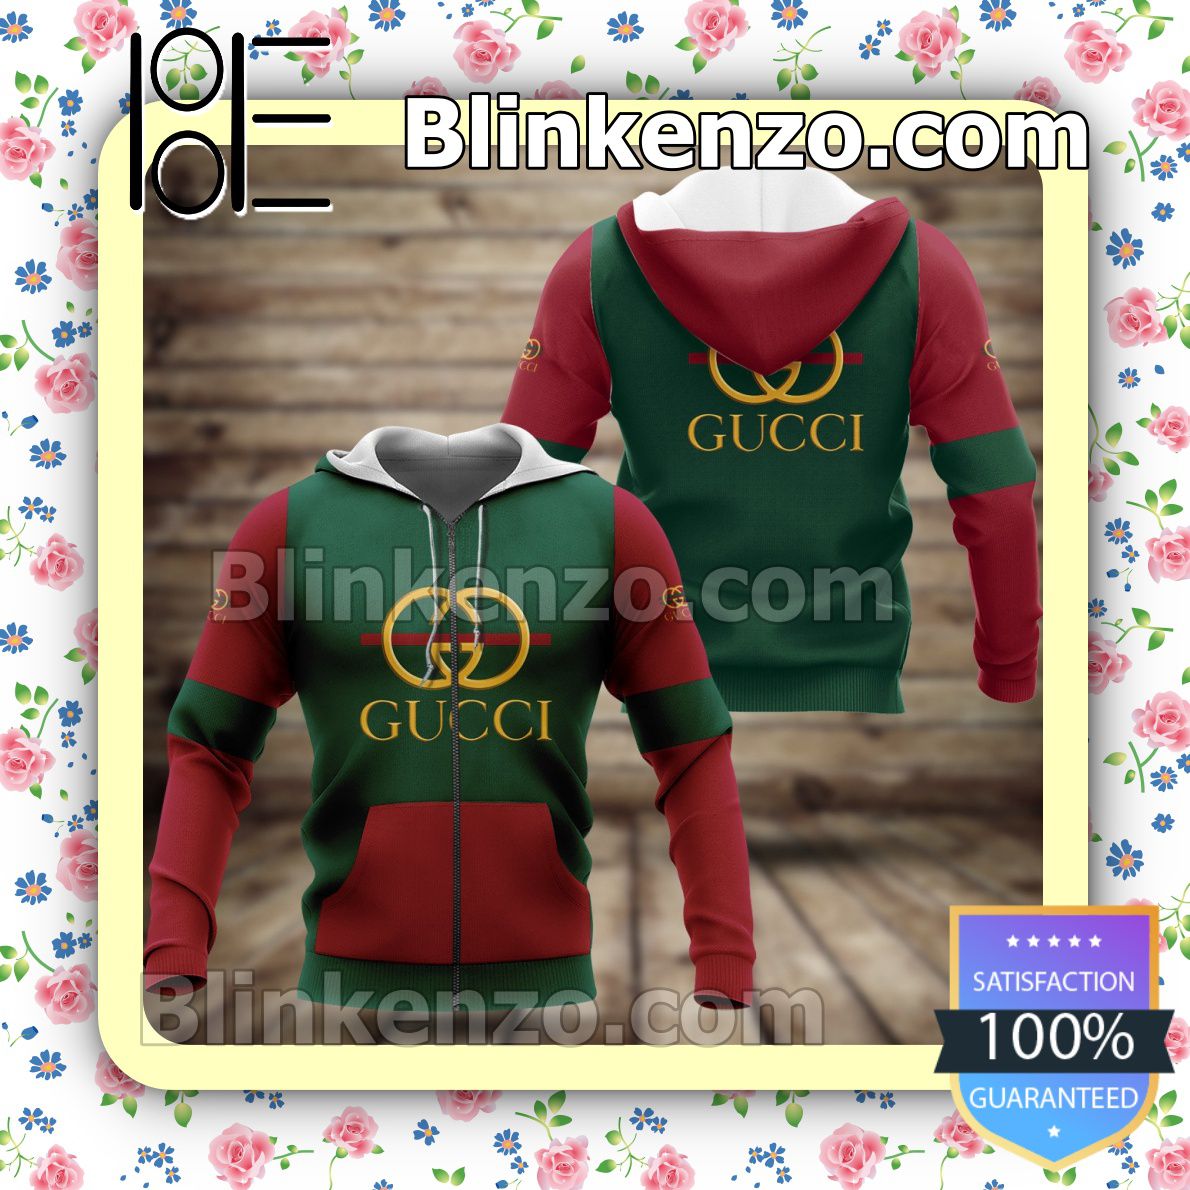 Discount Gucci Green And Red Full-Zip Hooded Fleece Sweatshirt